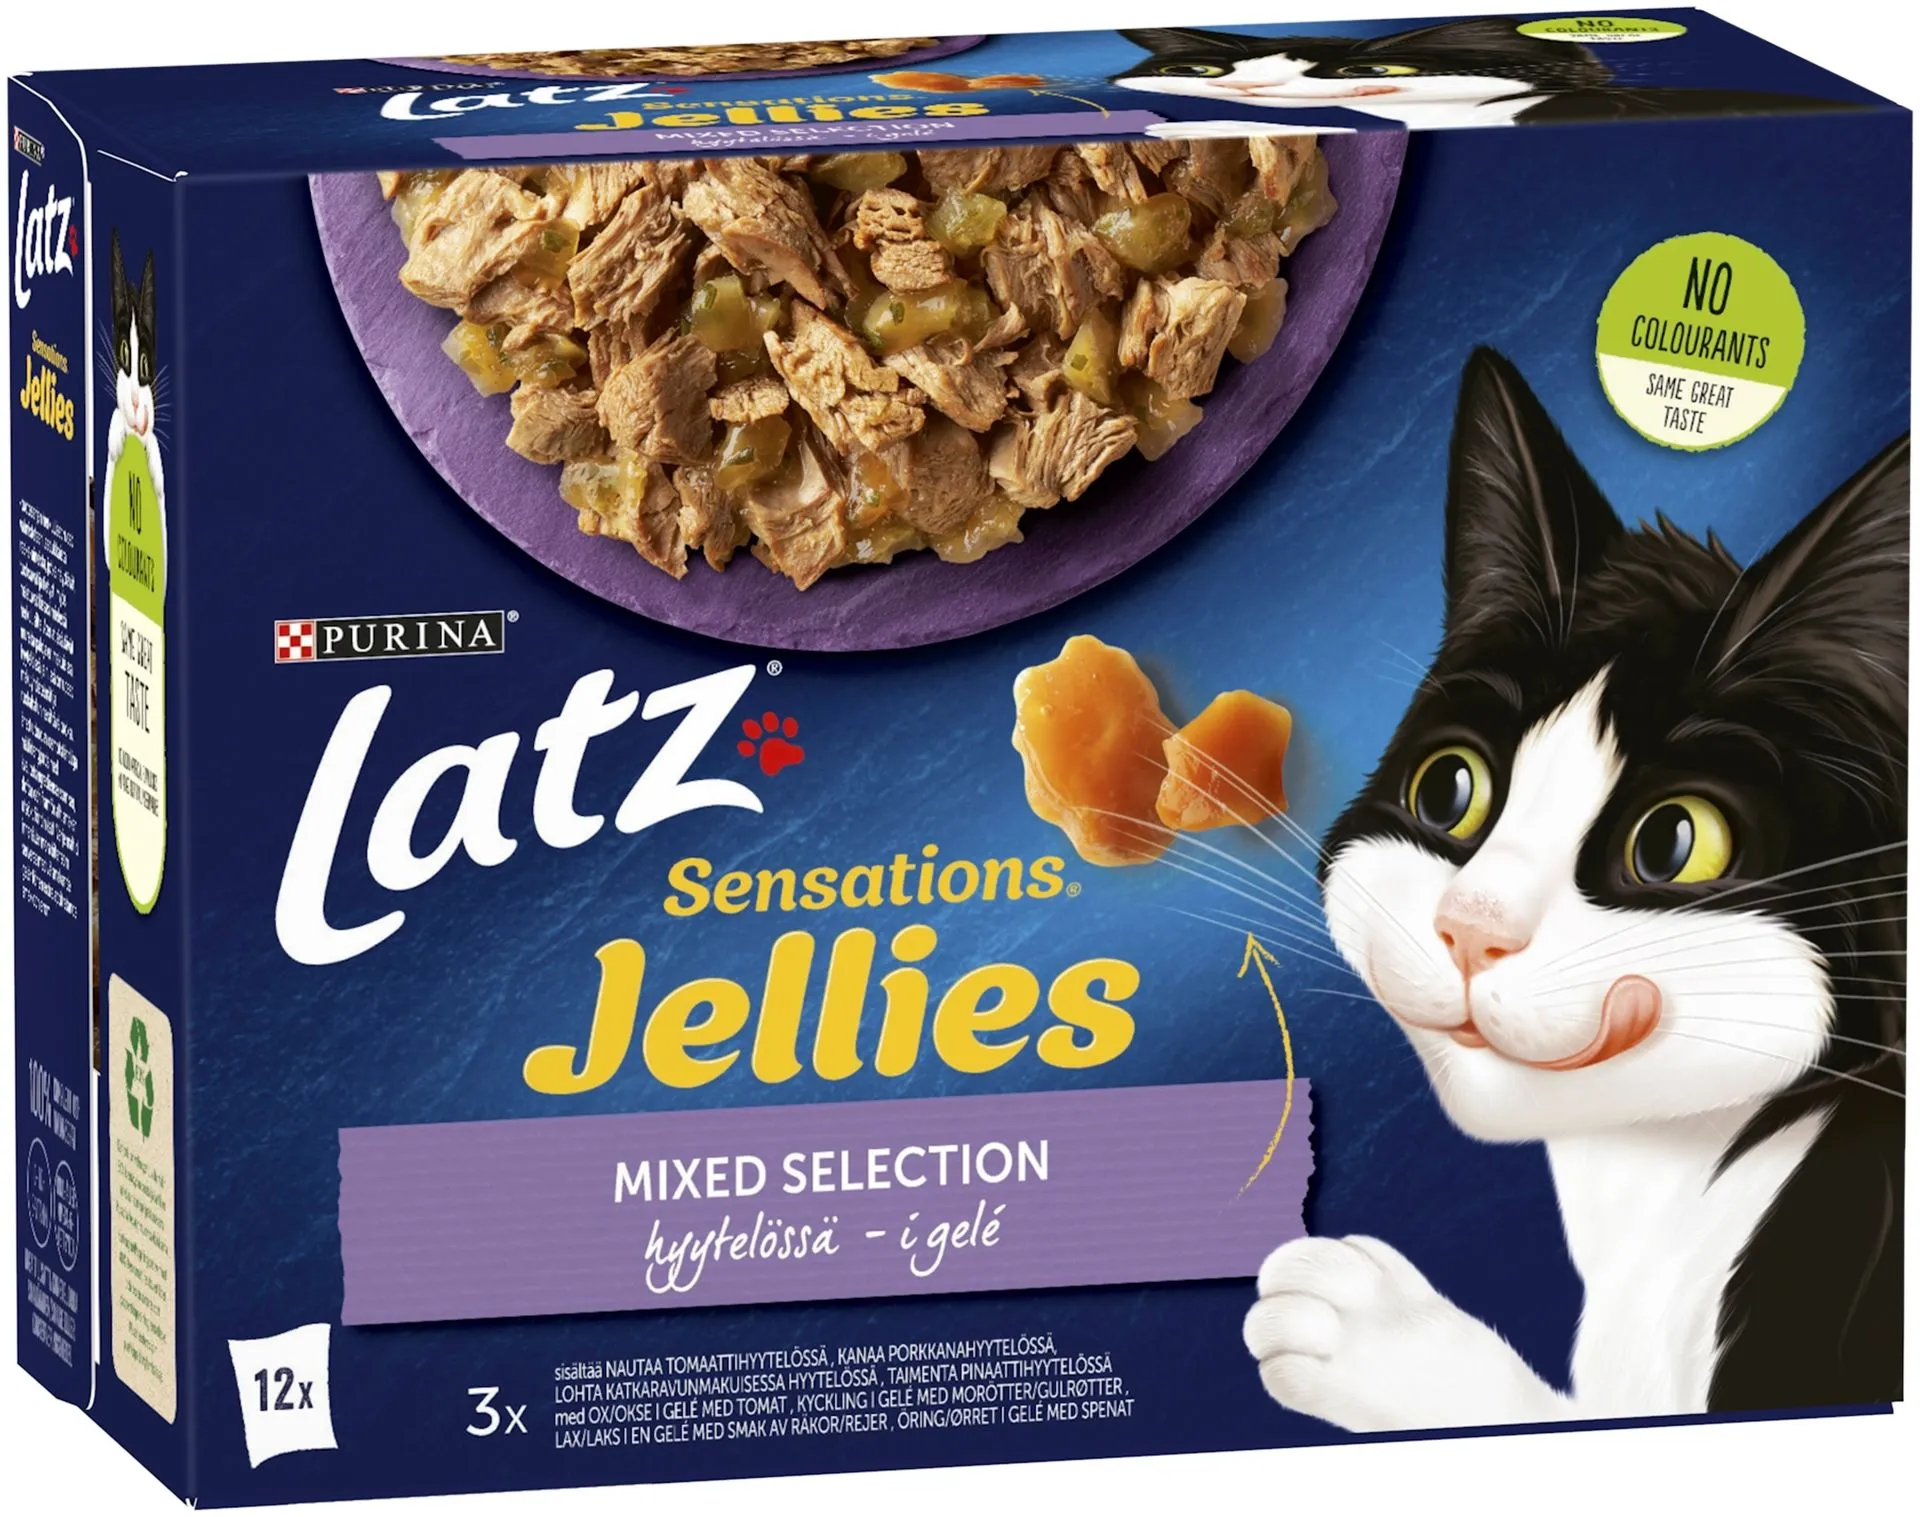 Latz Sensations Jellies 12x85g Mixed lajitelma hyytelössä 4 varianttia kissanruoka